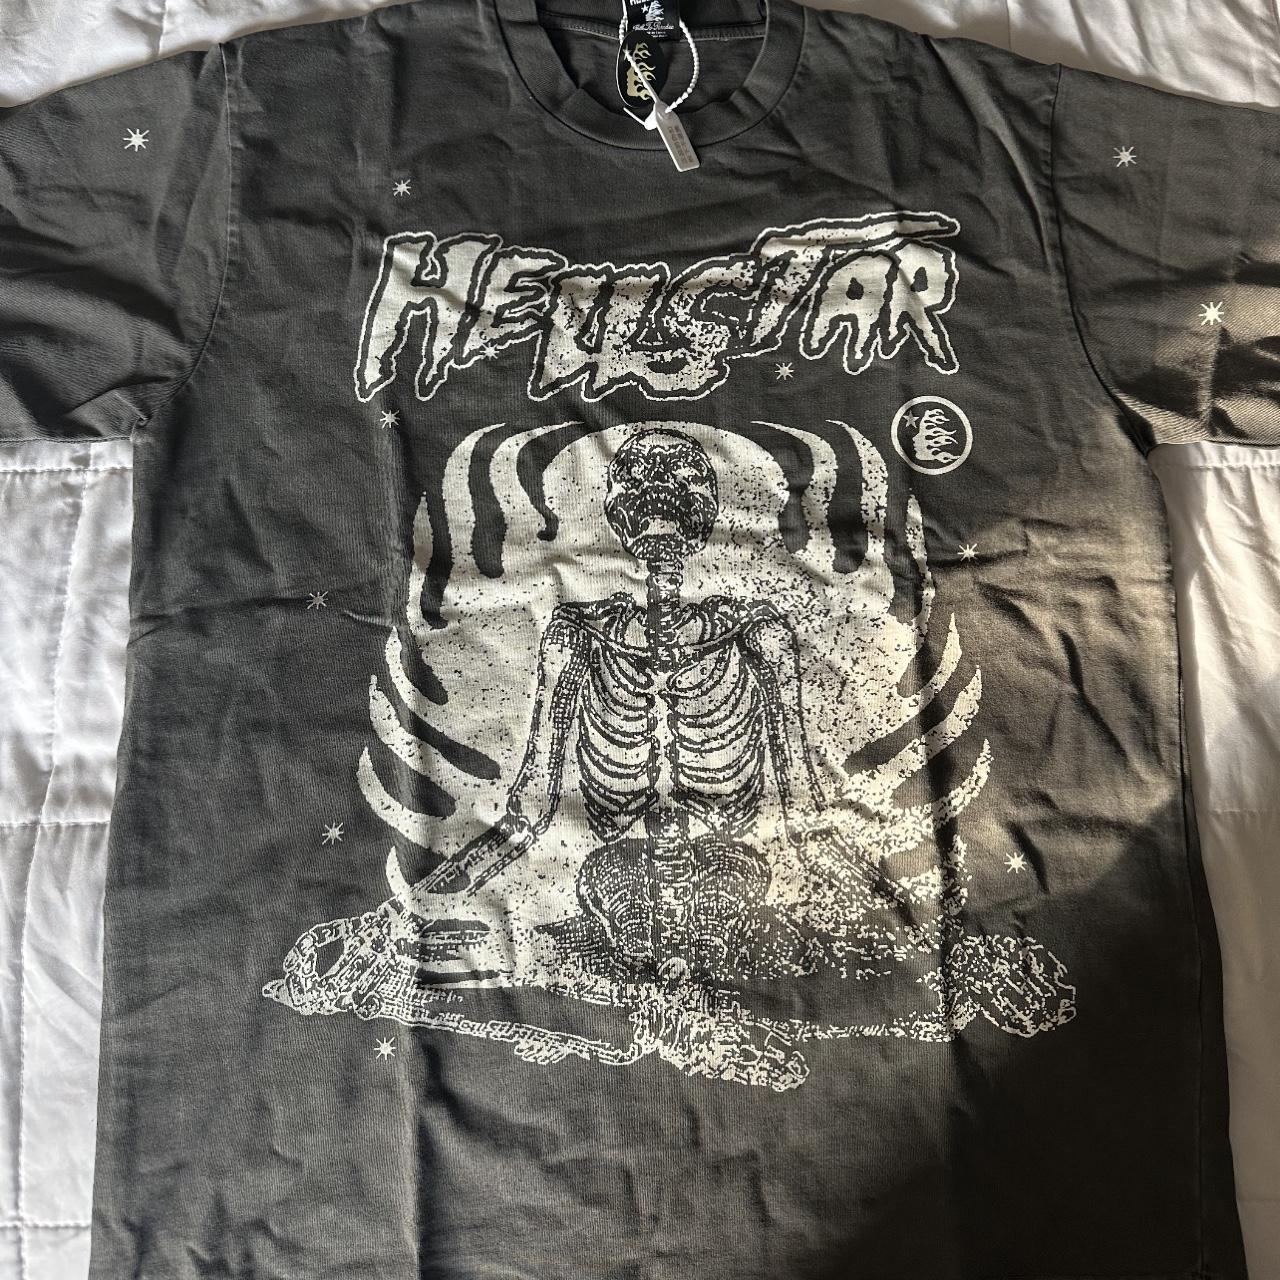 Hellstar Skeleton T-Shirt Size medium - Depop